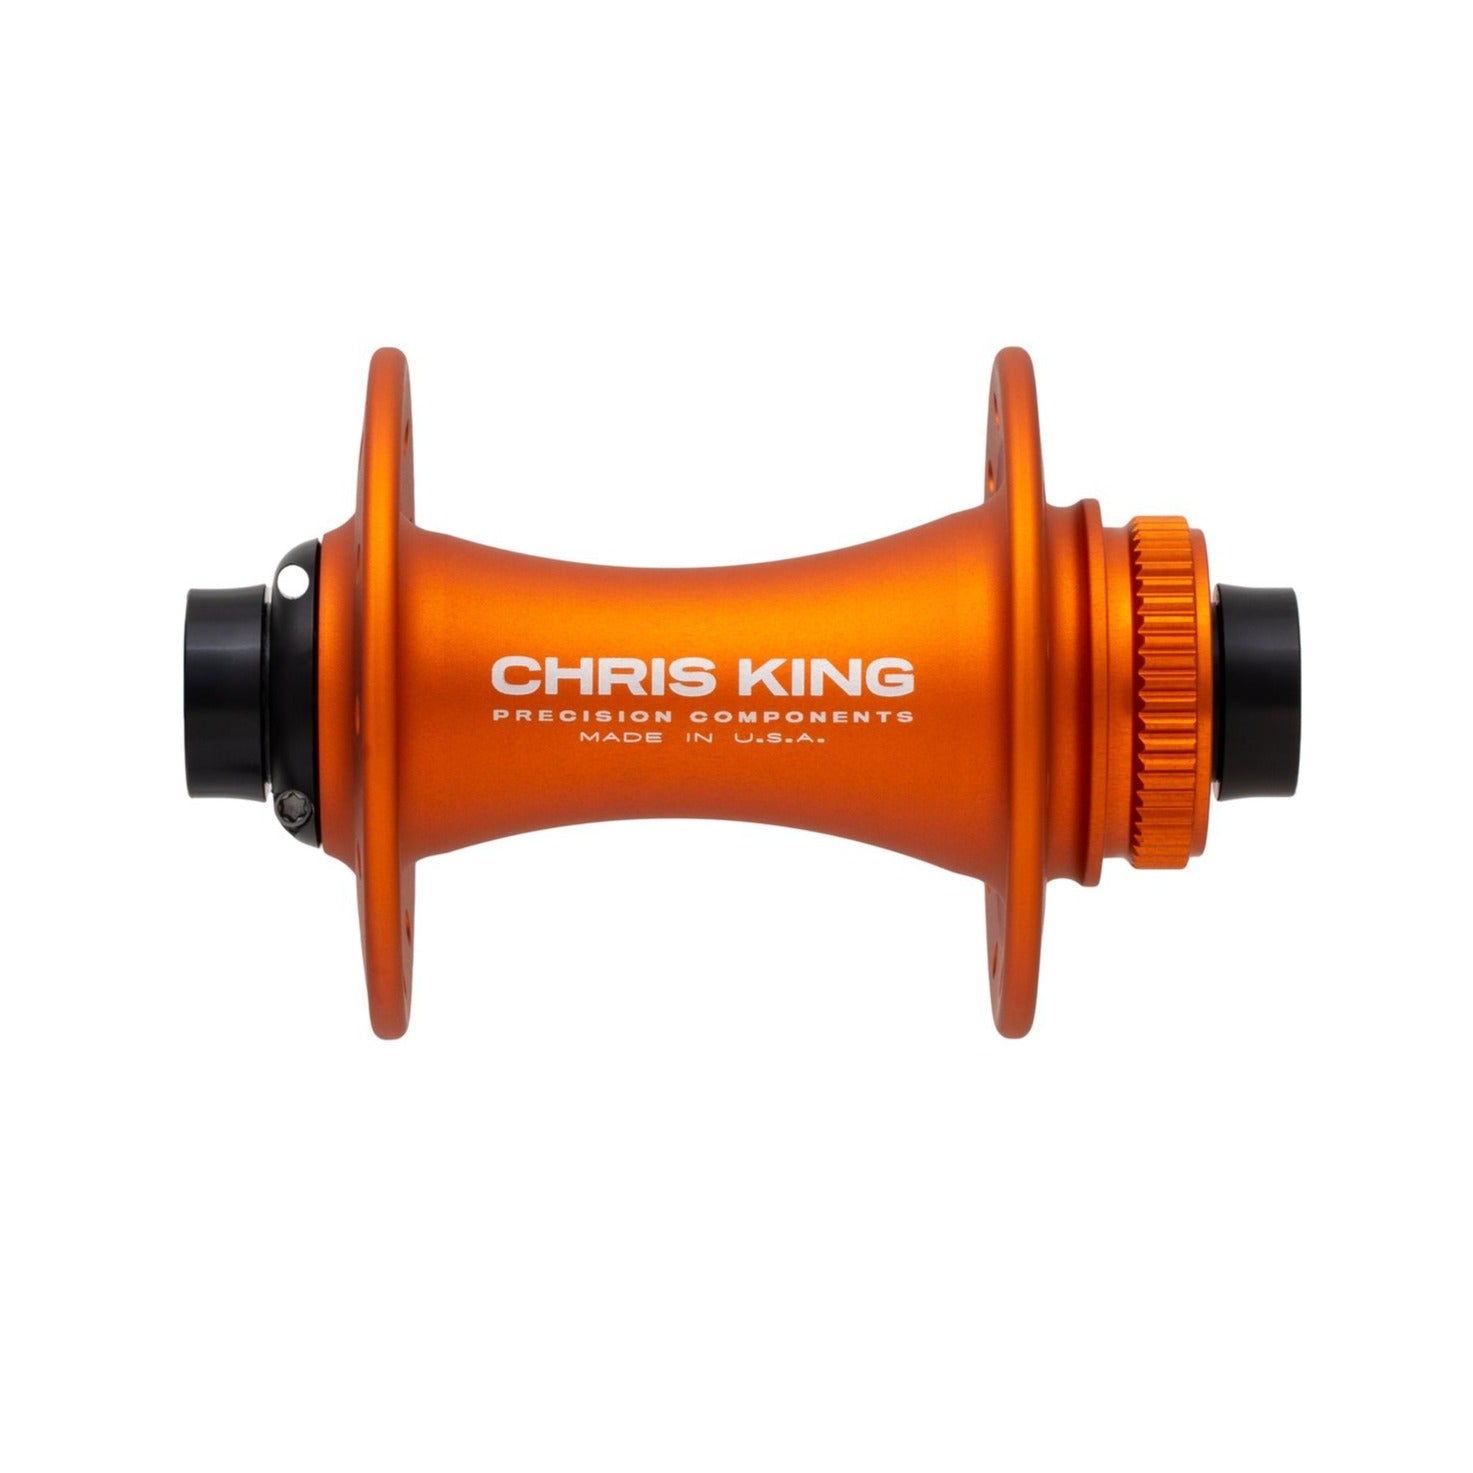 ENVE G27 R45D 24/24 – Chris King Precision Components